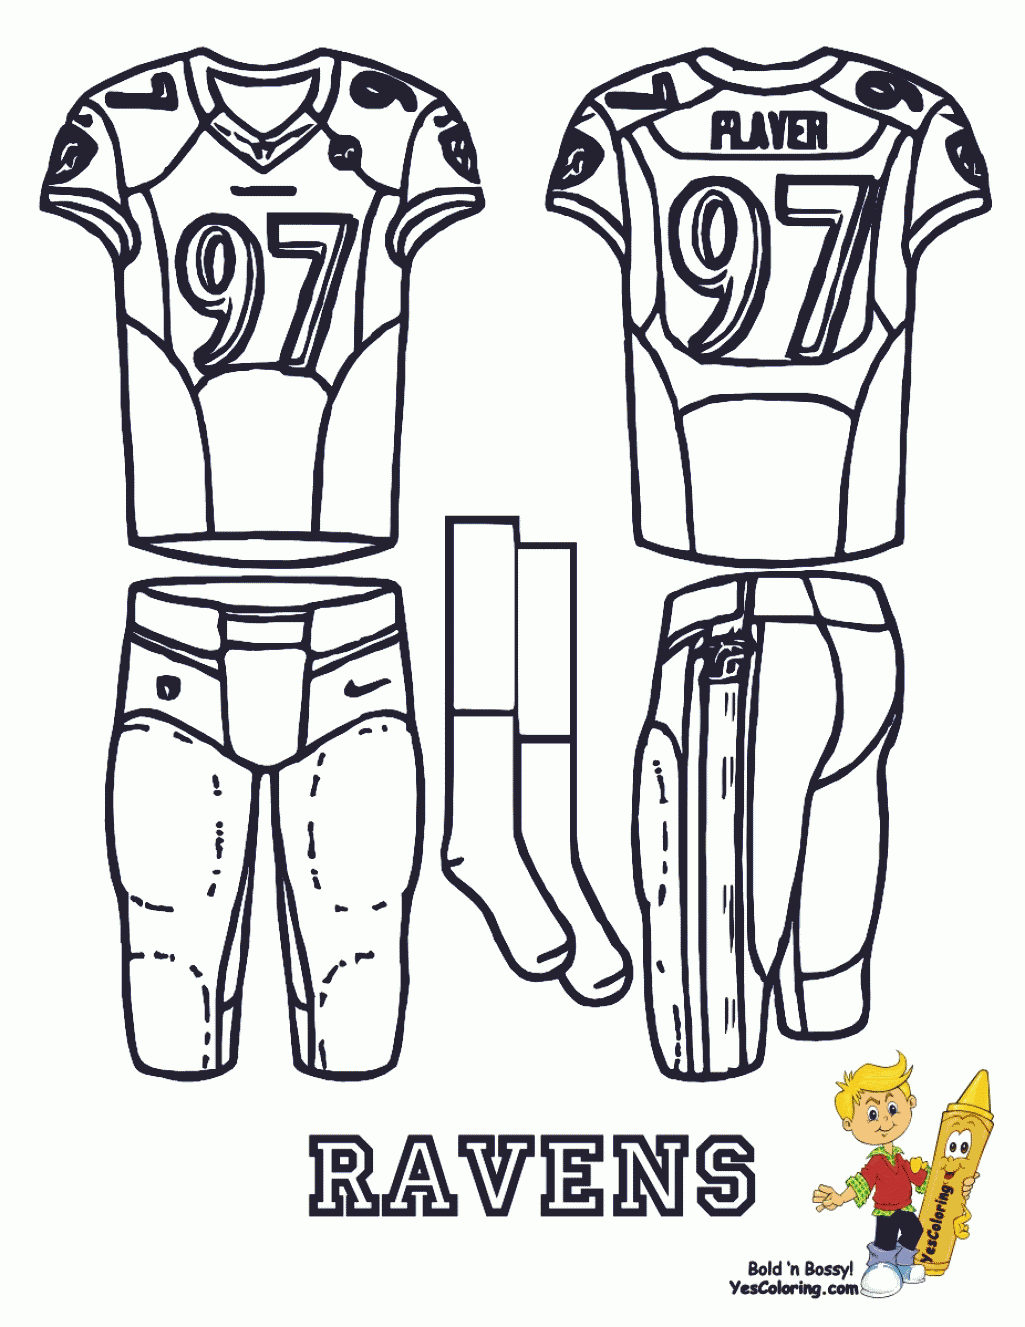 Baltimore Ravens clothes